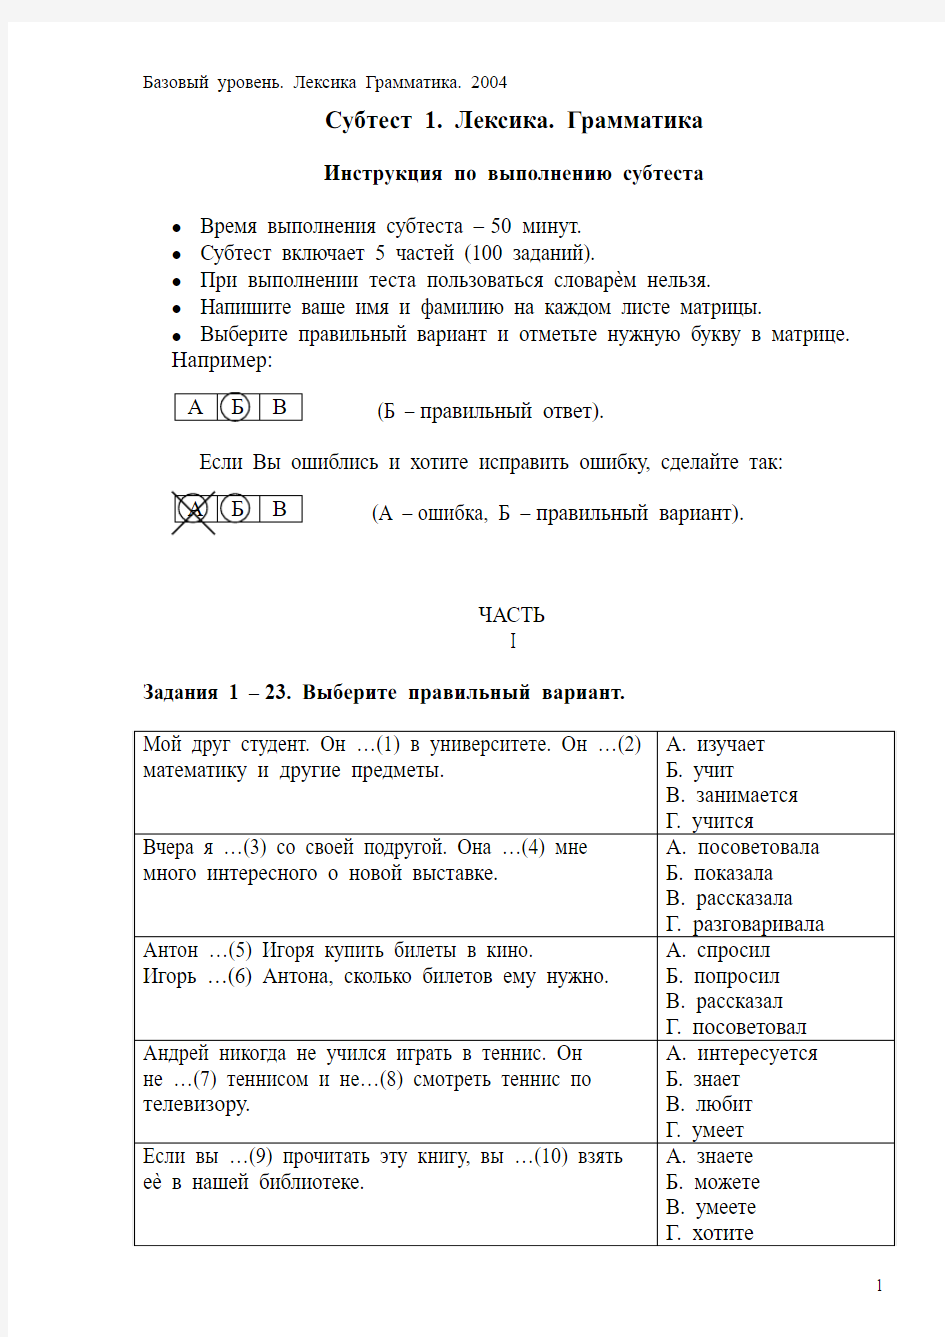 俄罗斯俄语一级考试语法选择题真题考生必载Лексика грамматика